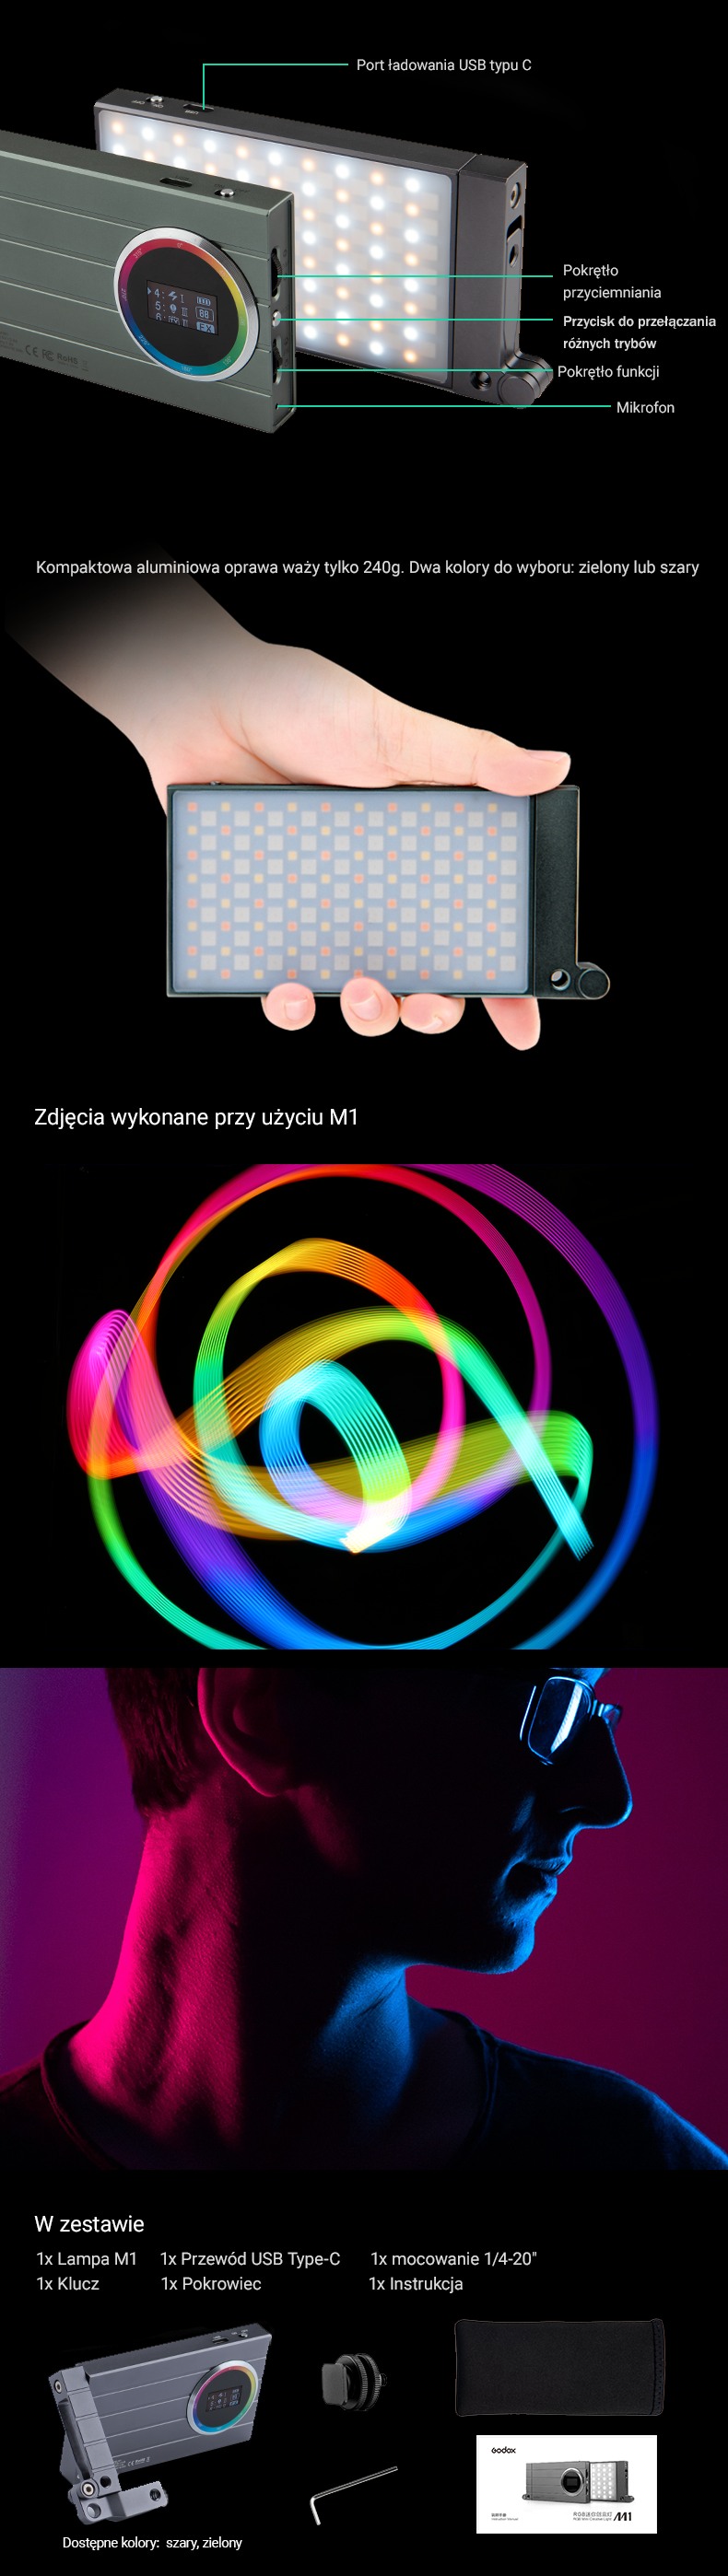 Godox M1 RGB. Funkcje, przyciski, gniazda. Zdjęcia wykonane przy użyciu M1, co znajduje się w zestawie.